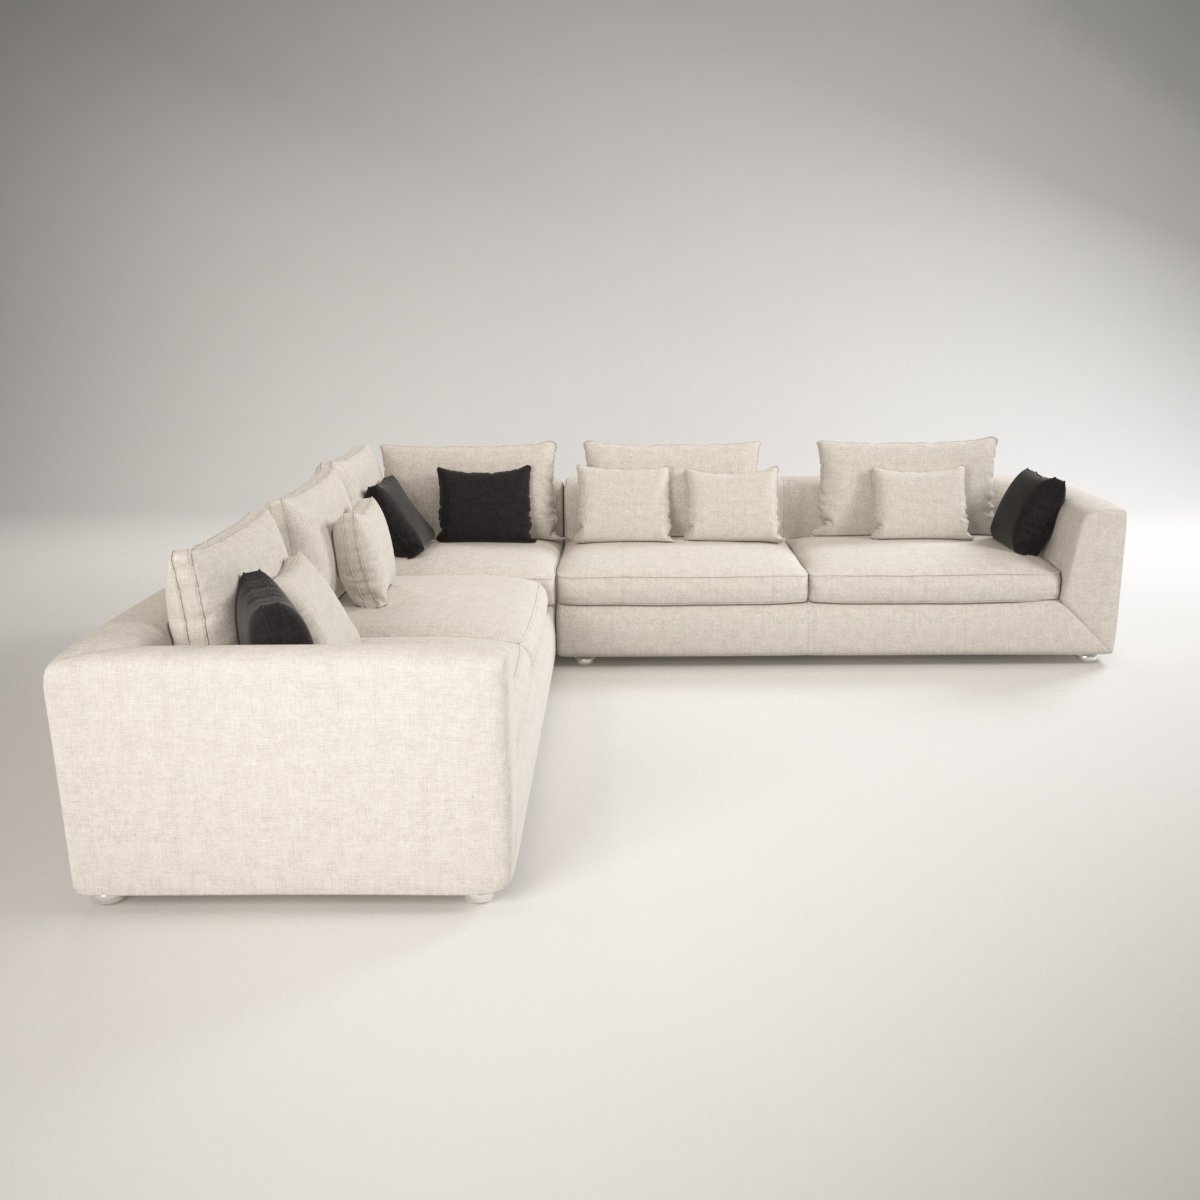 Sofa 3d model. BEAUTIFULSOFA.